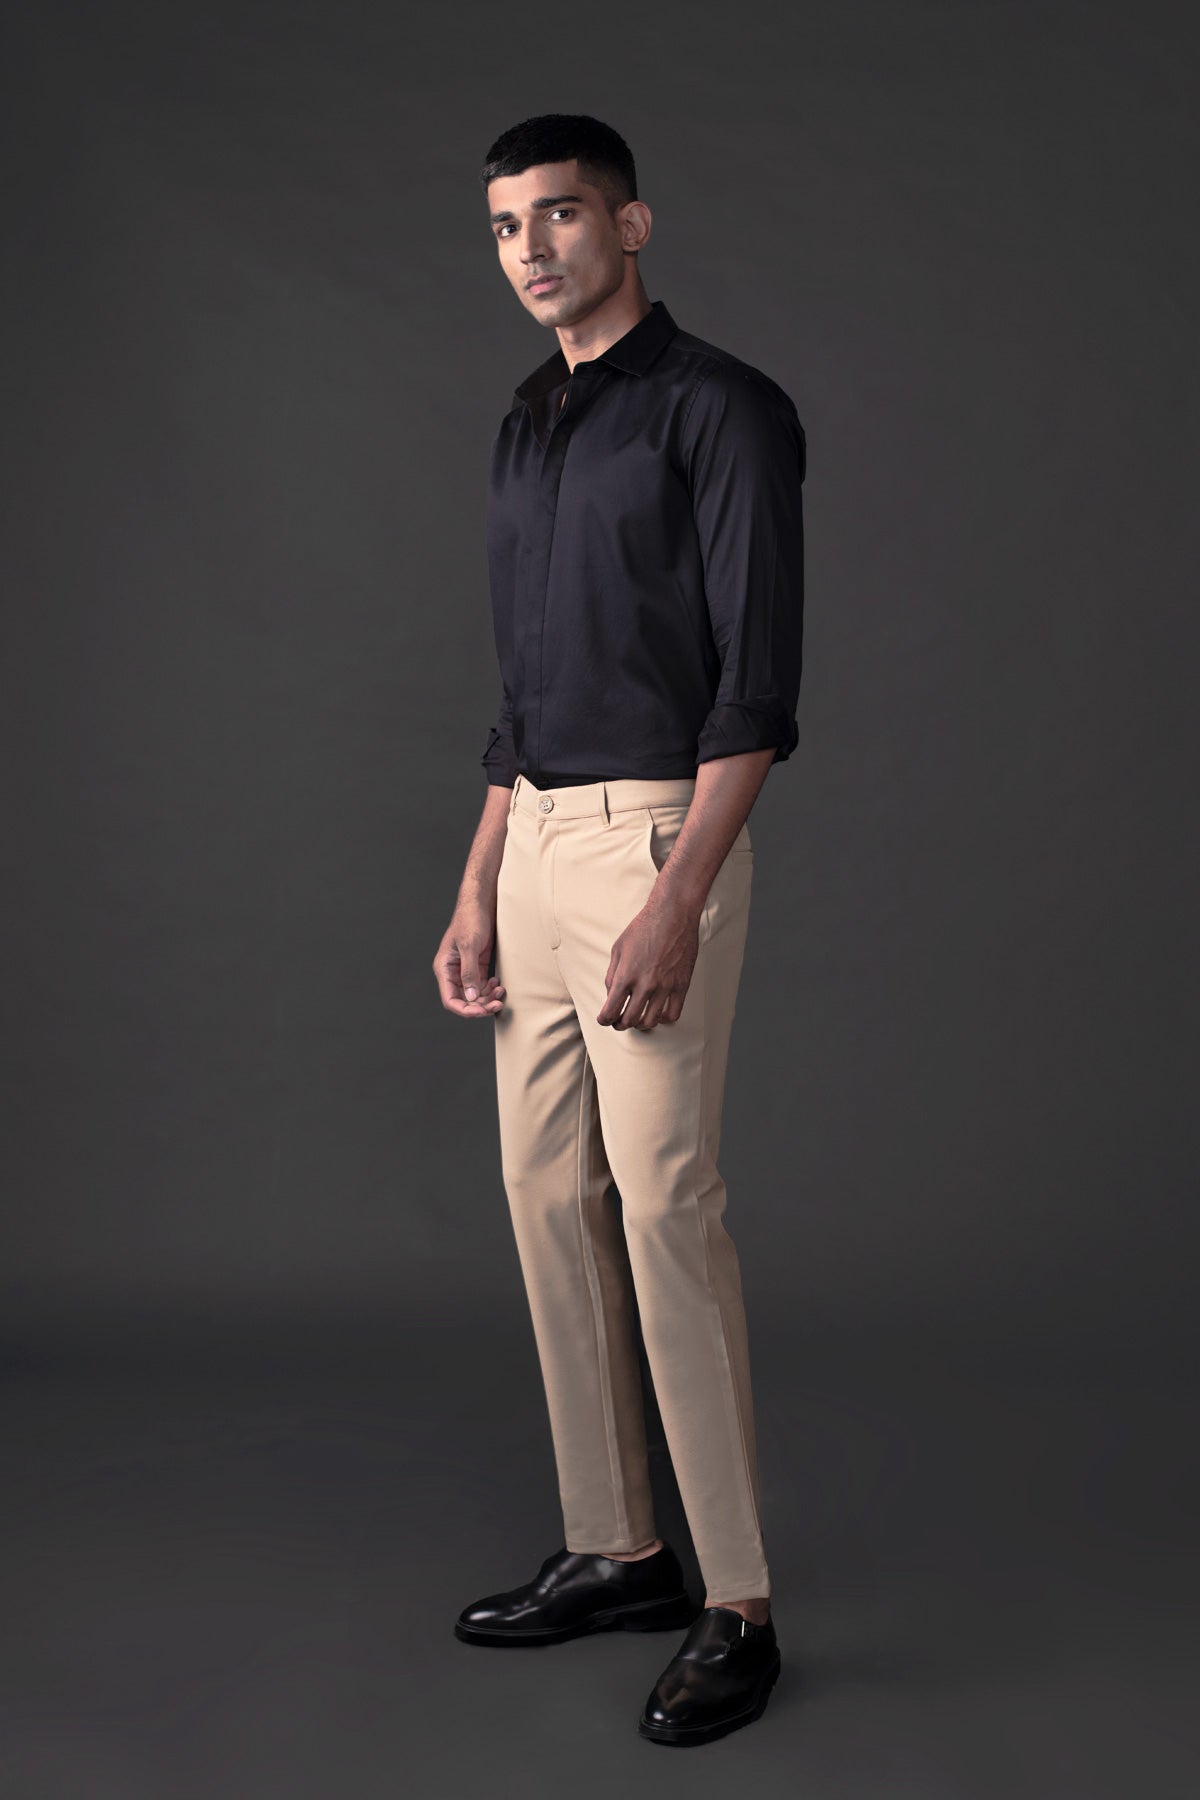 Buy Hybrid trouser for men, Men's Hybrid casual pants